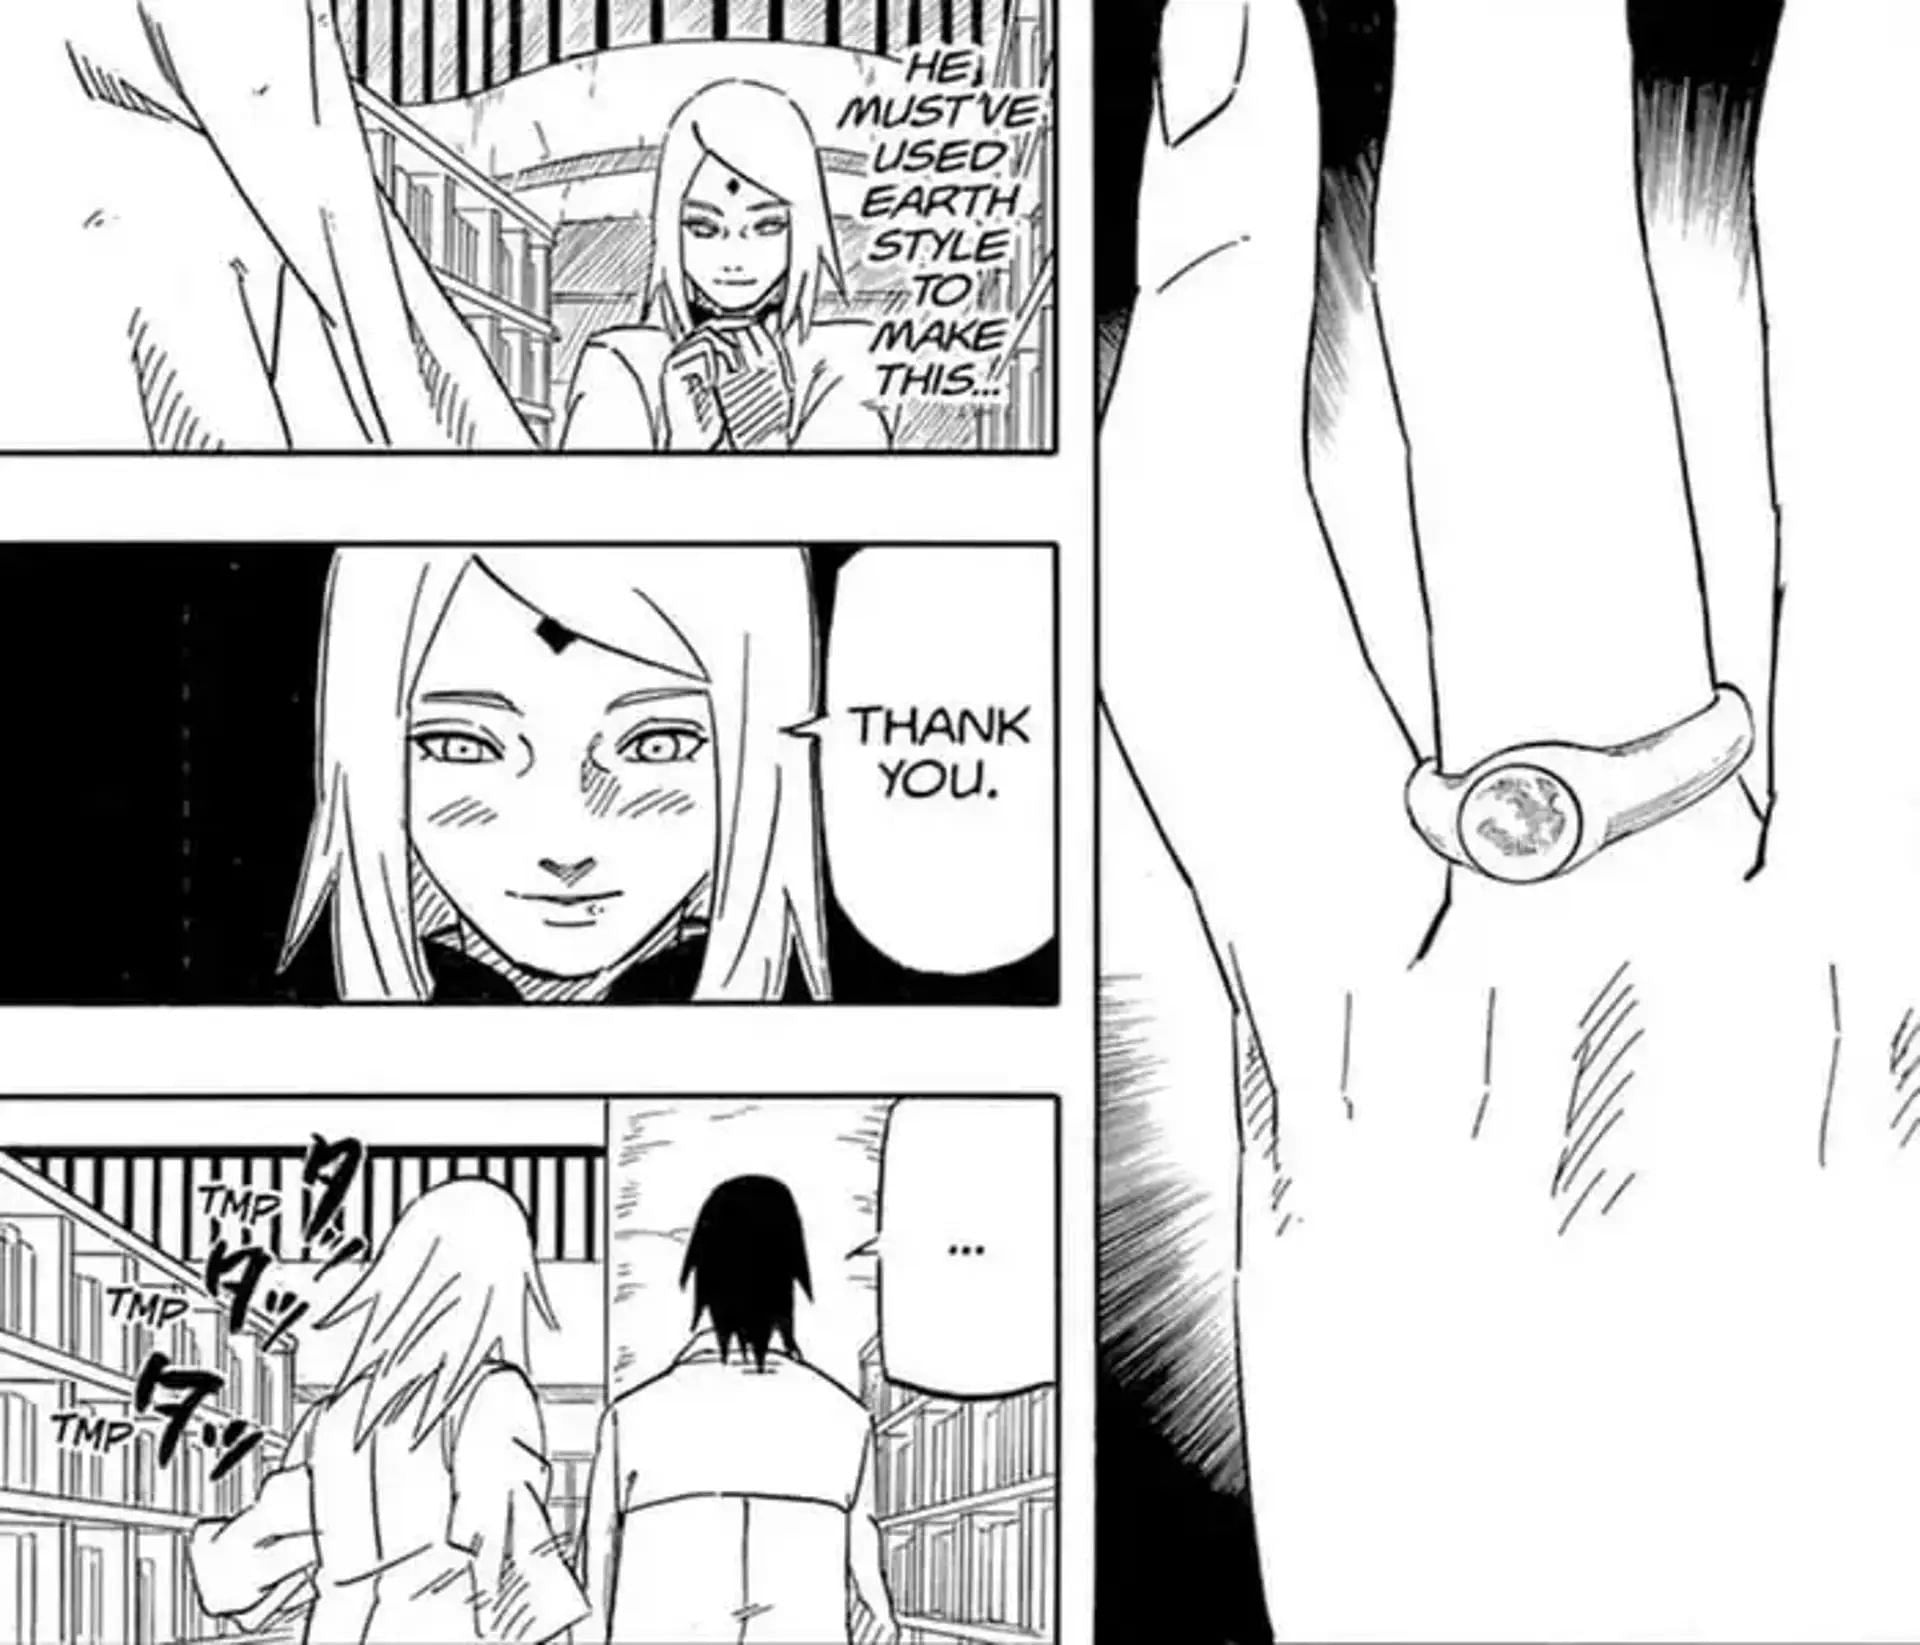 Sasuke fashions a ring with Earth Style and gives it to Sakura (Image via Shueisha)